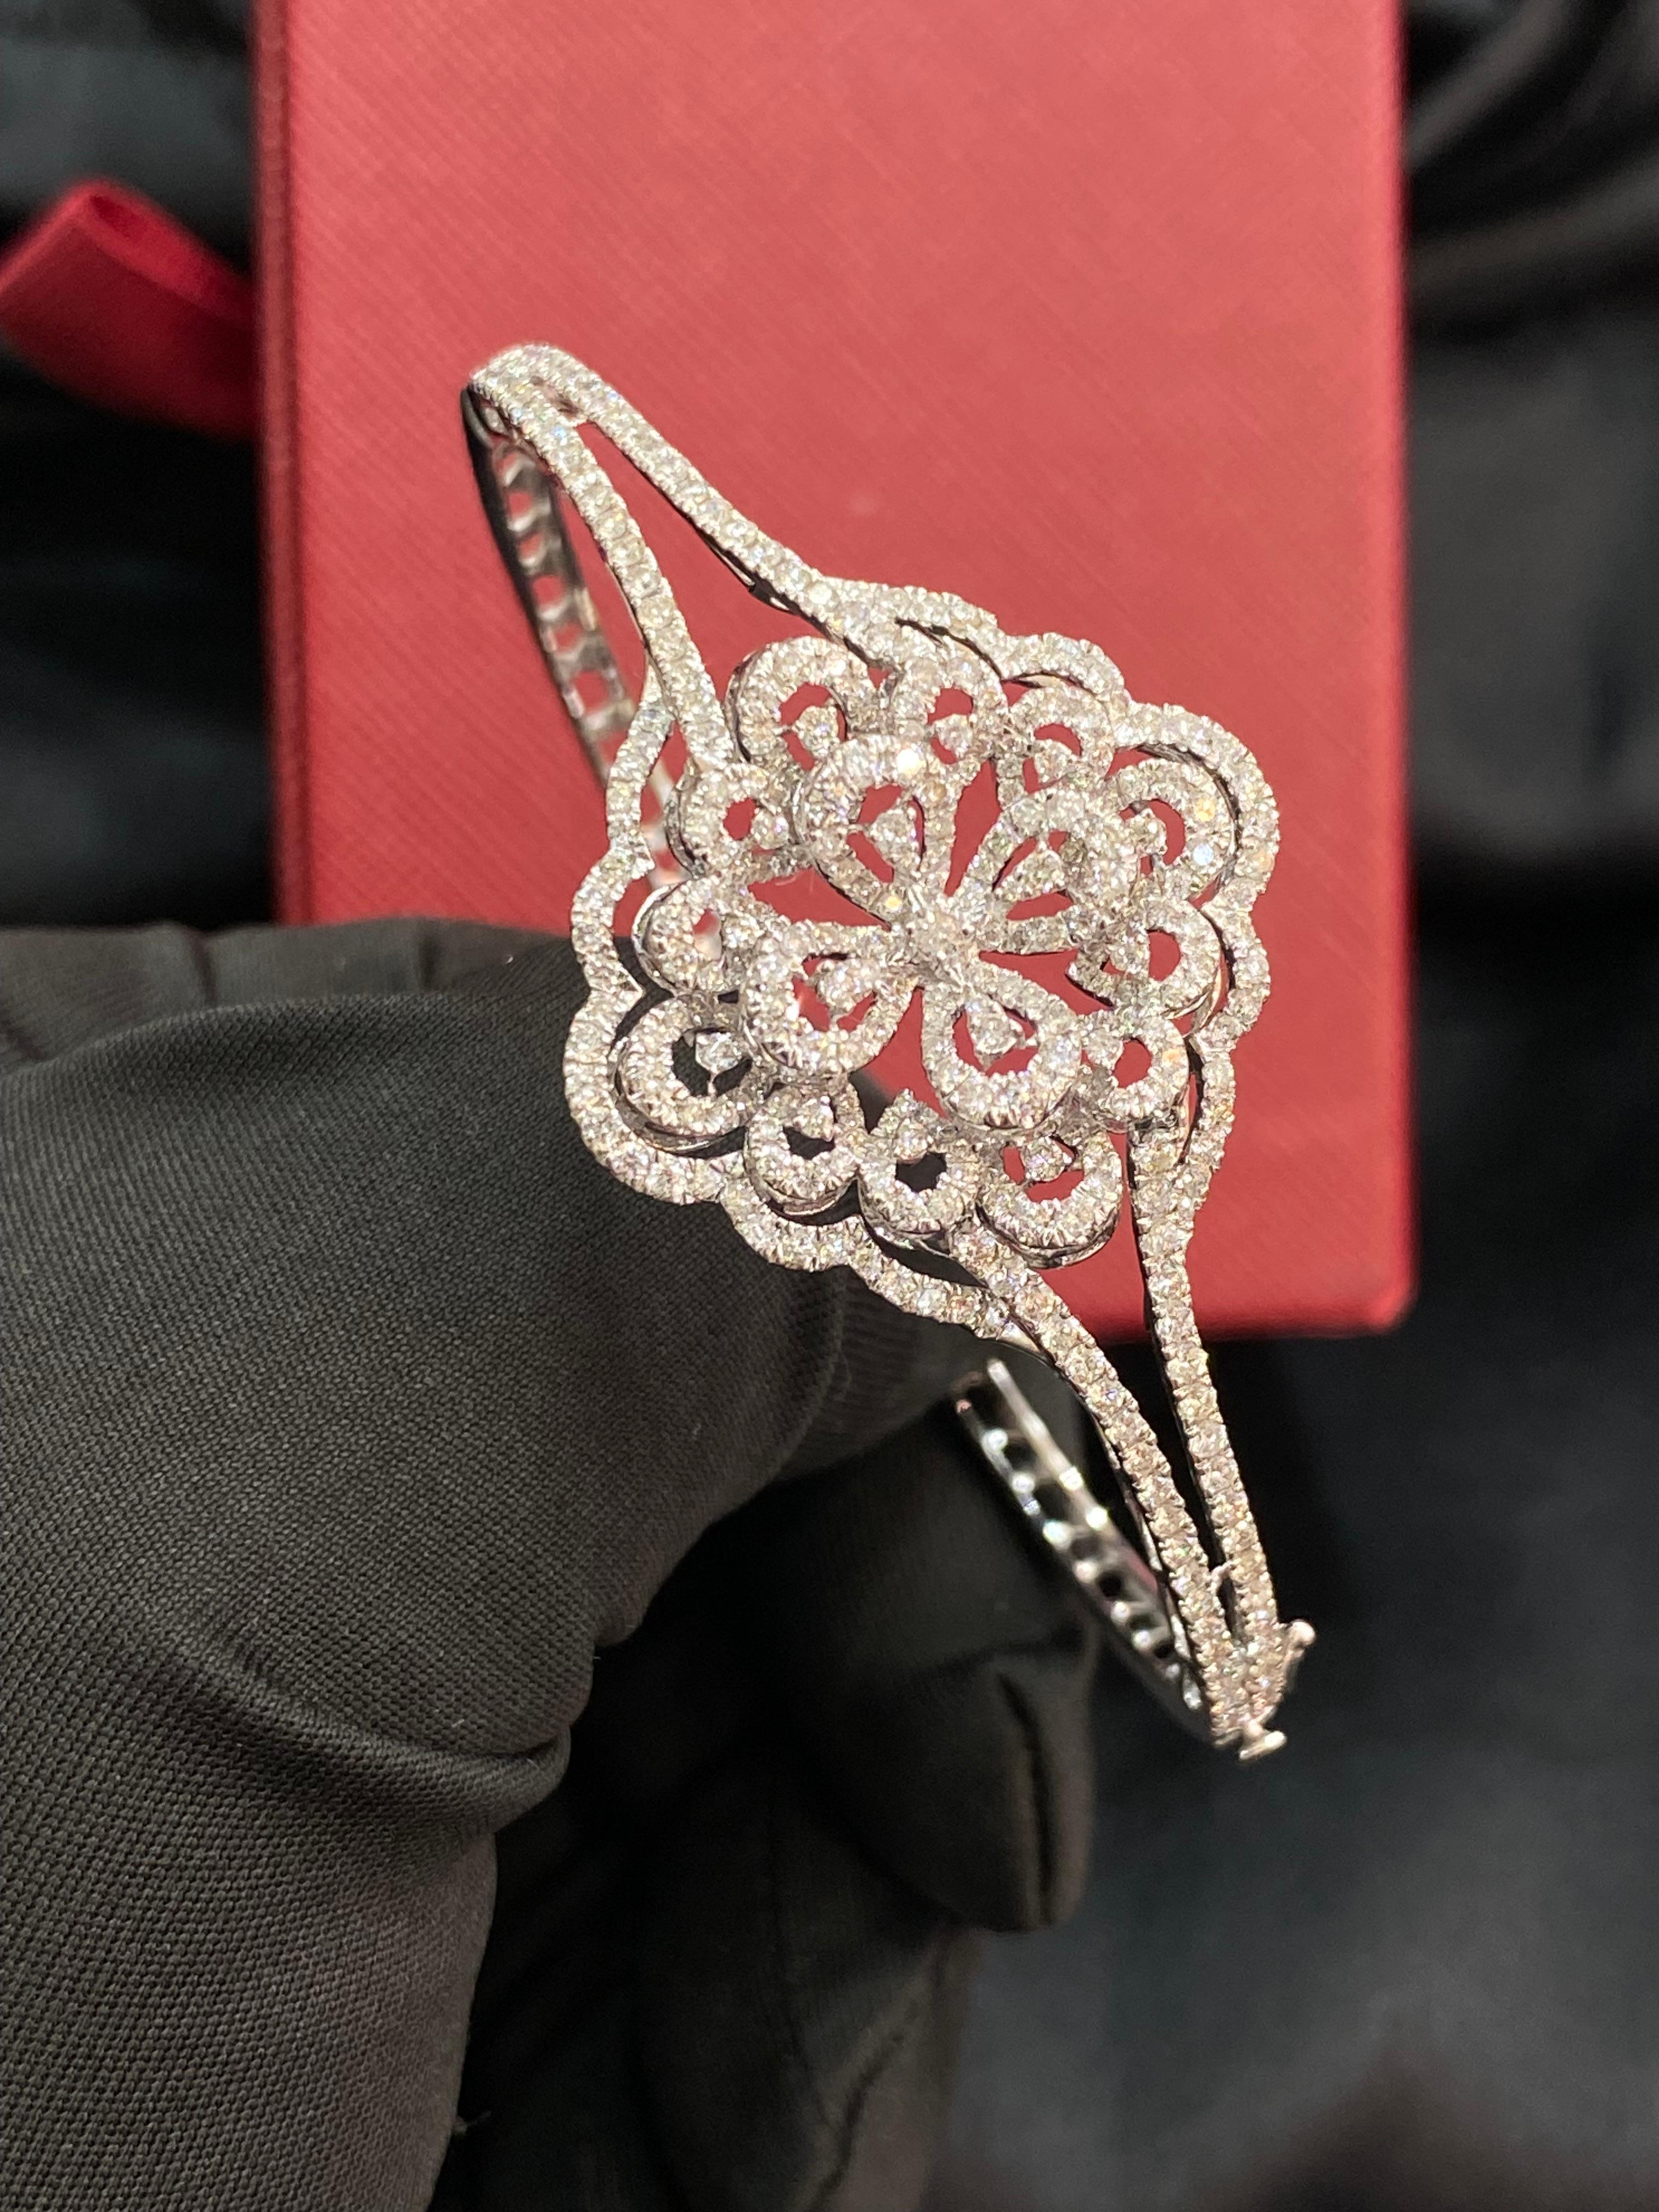 Ein so exquisites Armband zaubert garantiert ein Millionen-Dollar-Lächeln. Mit 2,88 Karat schillernden Diamanten aus 14-karätigem Weißgold verspricht dieses Schmuckstück, dass Sie sich wahrhaft königlich fühlen werden!

Spezifikationen: 

Diamant